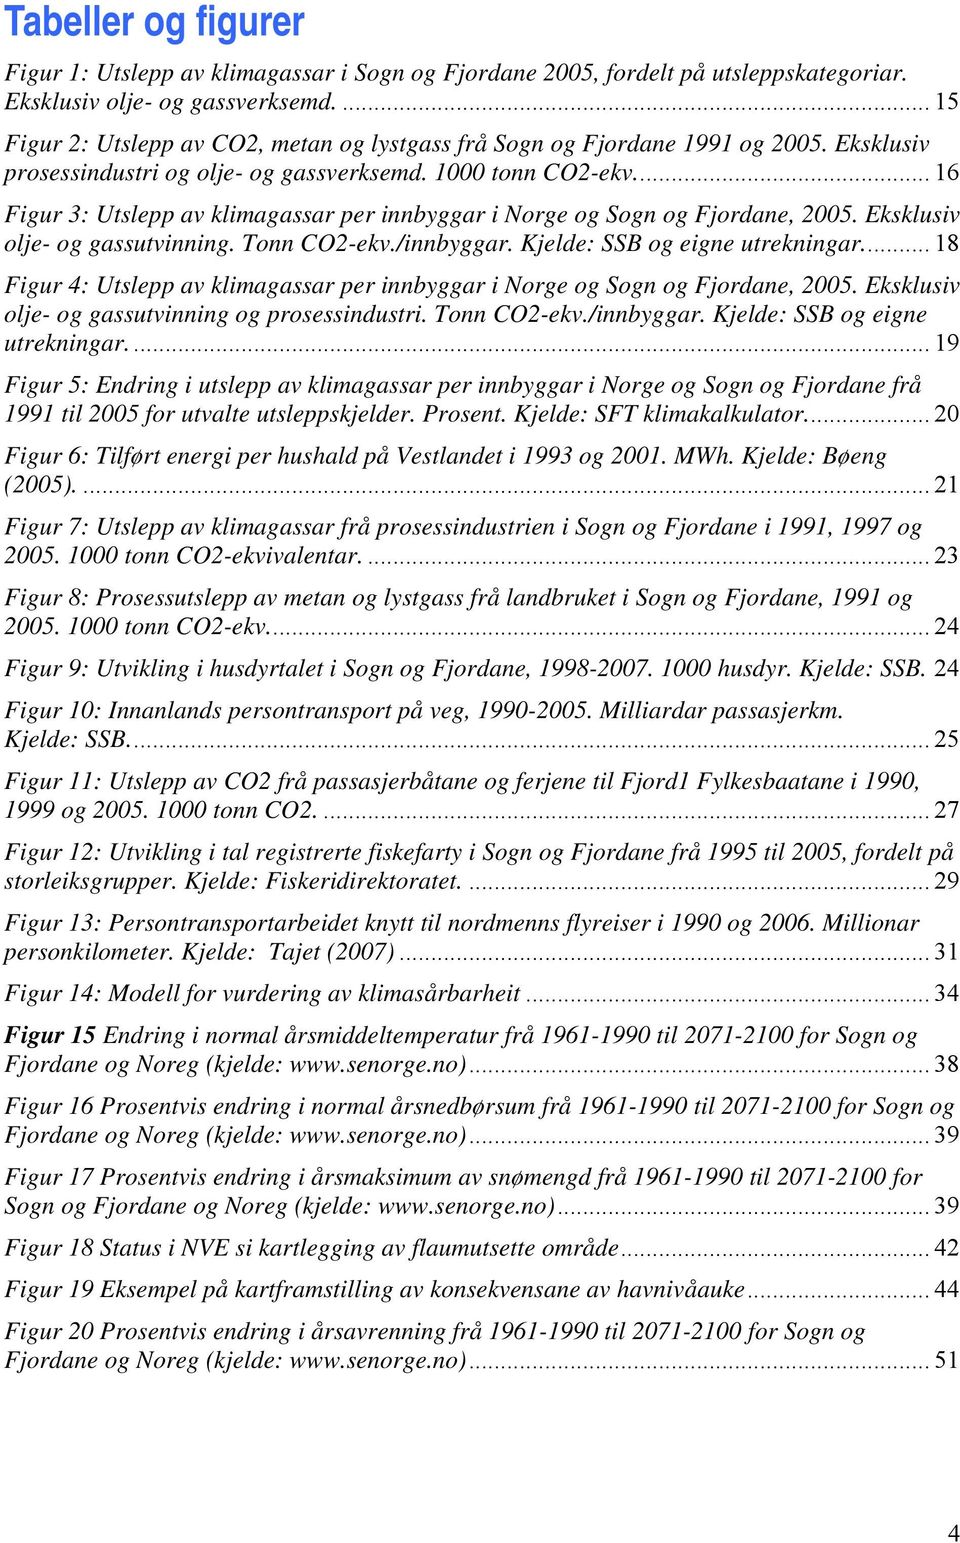 .. 16 Figur 3: Utslepp av klimagassar per innbyggar i Norge og Sogn og Fjordane, 2005. Eksklusiv olje- og gassutvinning. Tonn CO2-ekv./innbyggar. Kjelde: SSB og eigne utrekningar.